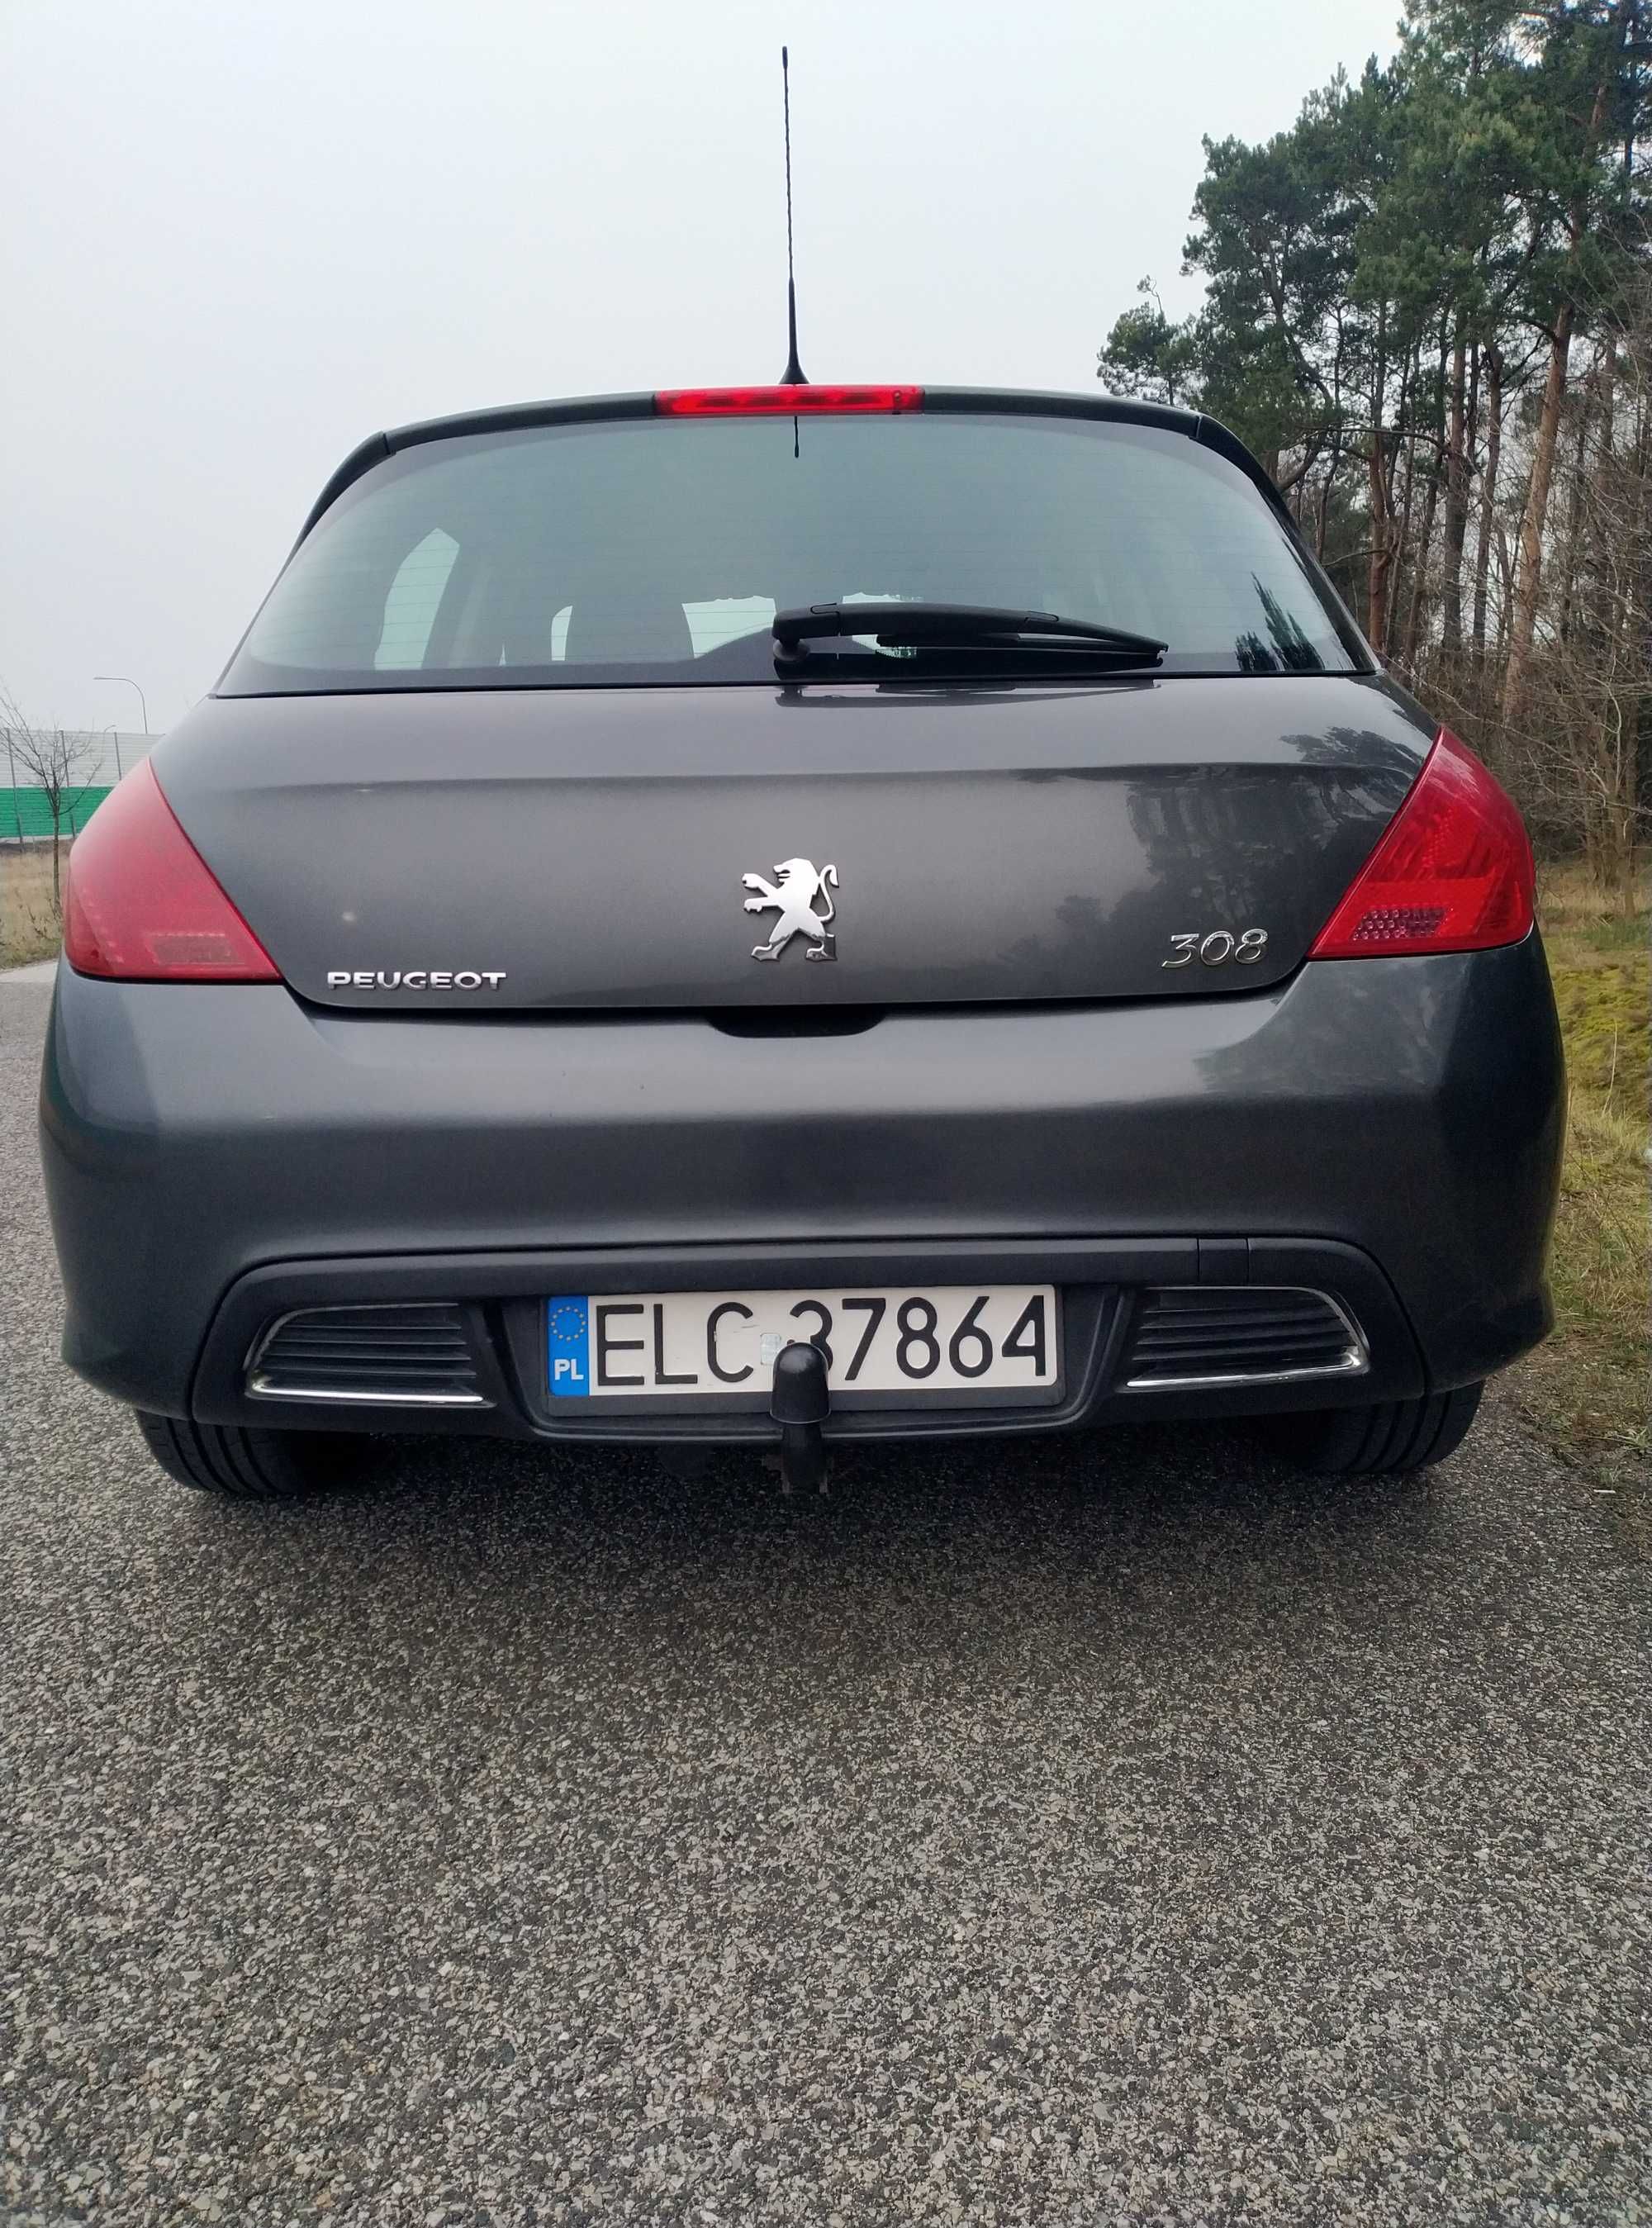 Peugeot 308, t7, 2010, disel, kompakt, 268 000 km, salon polski,